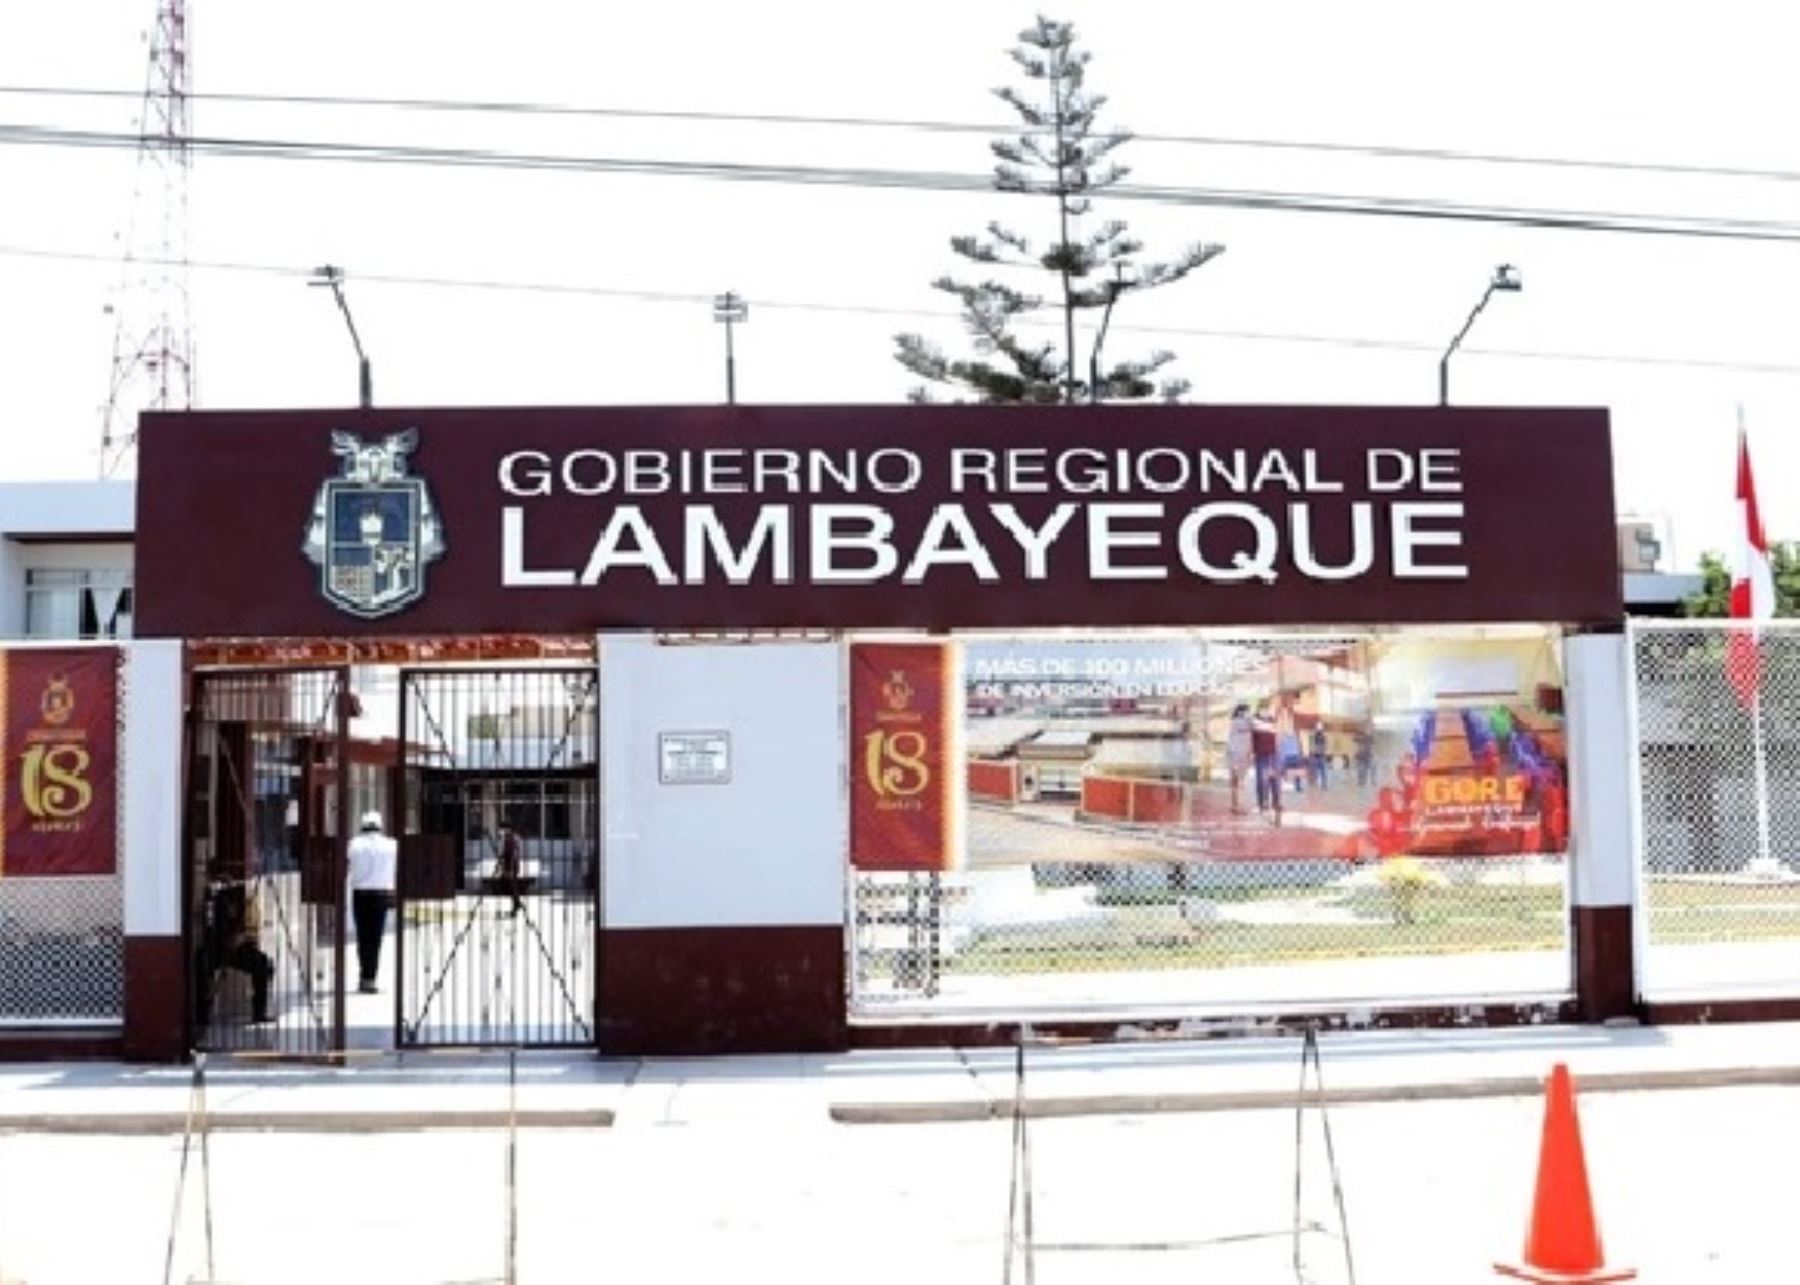 Exautoridades aspiran a ocupar cargo de gobernador regional en Lambayeque en las elecciones municipales y regionales que se celebrarán el 2 de octubre próximo.